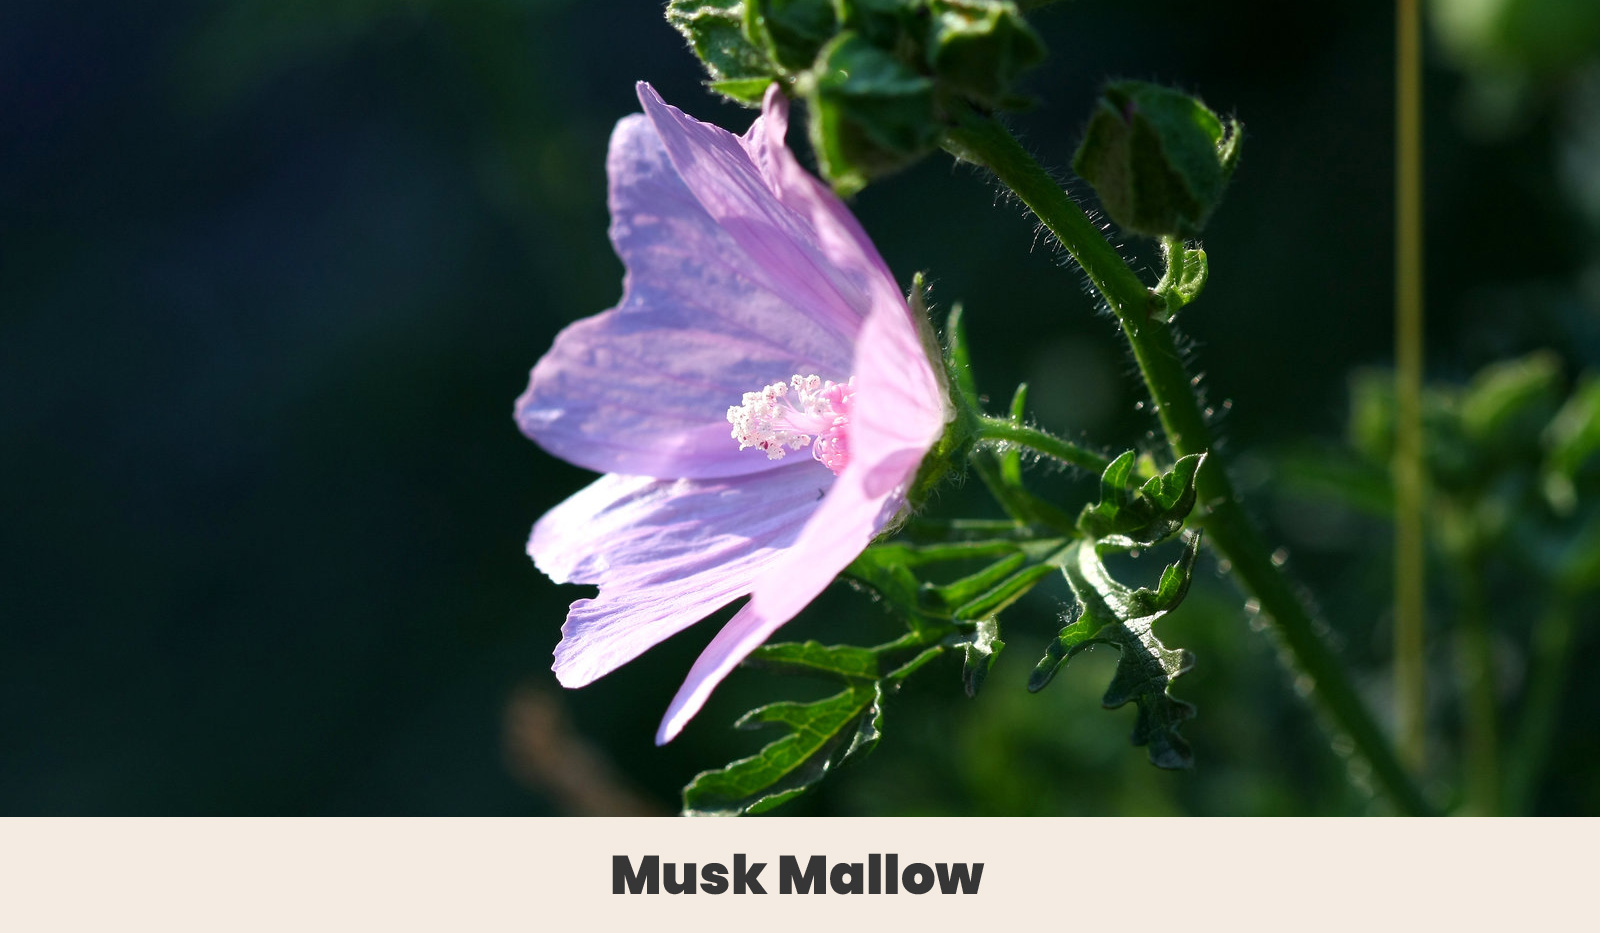 Musk mallow